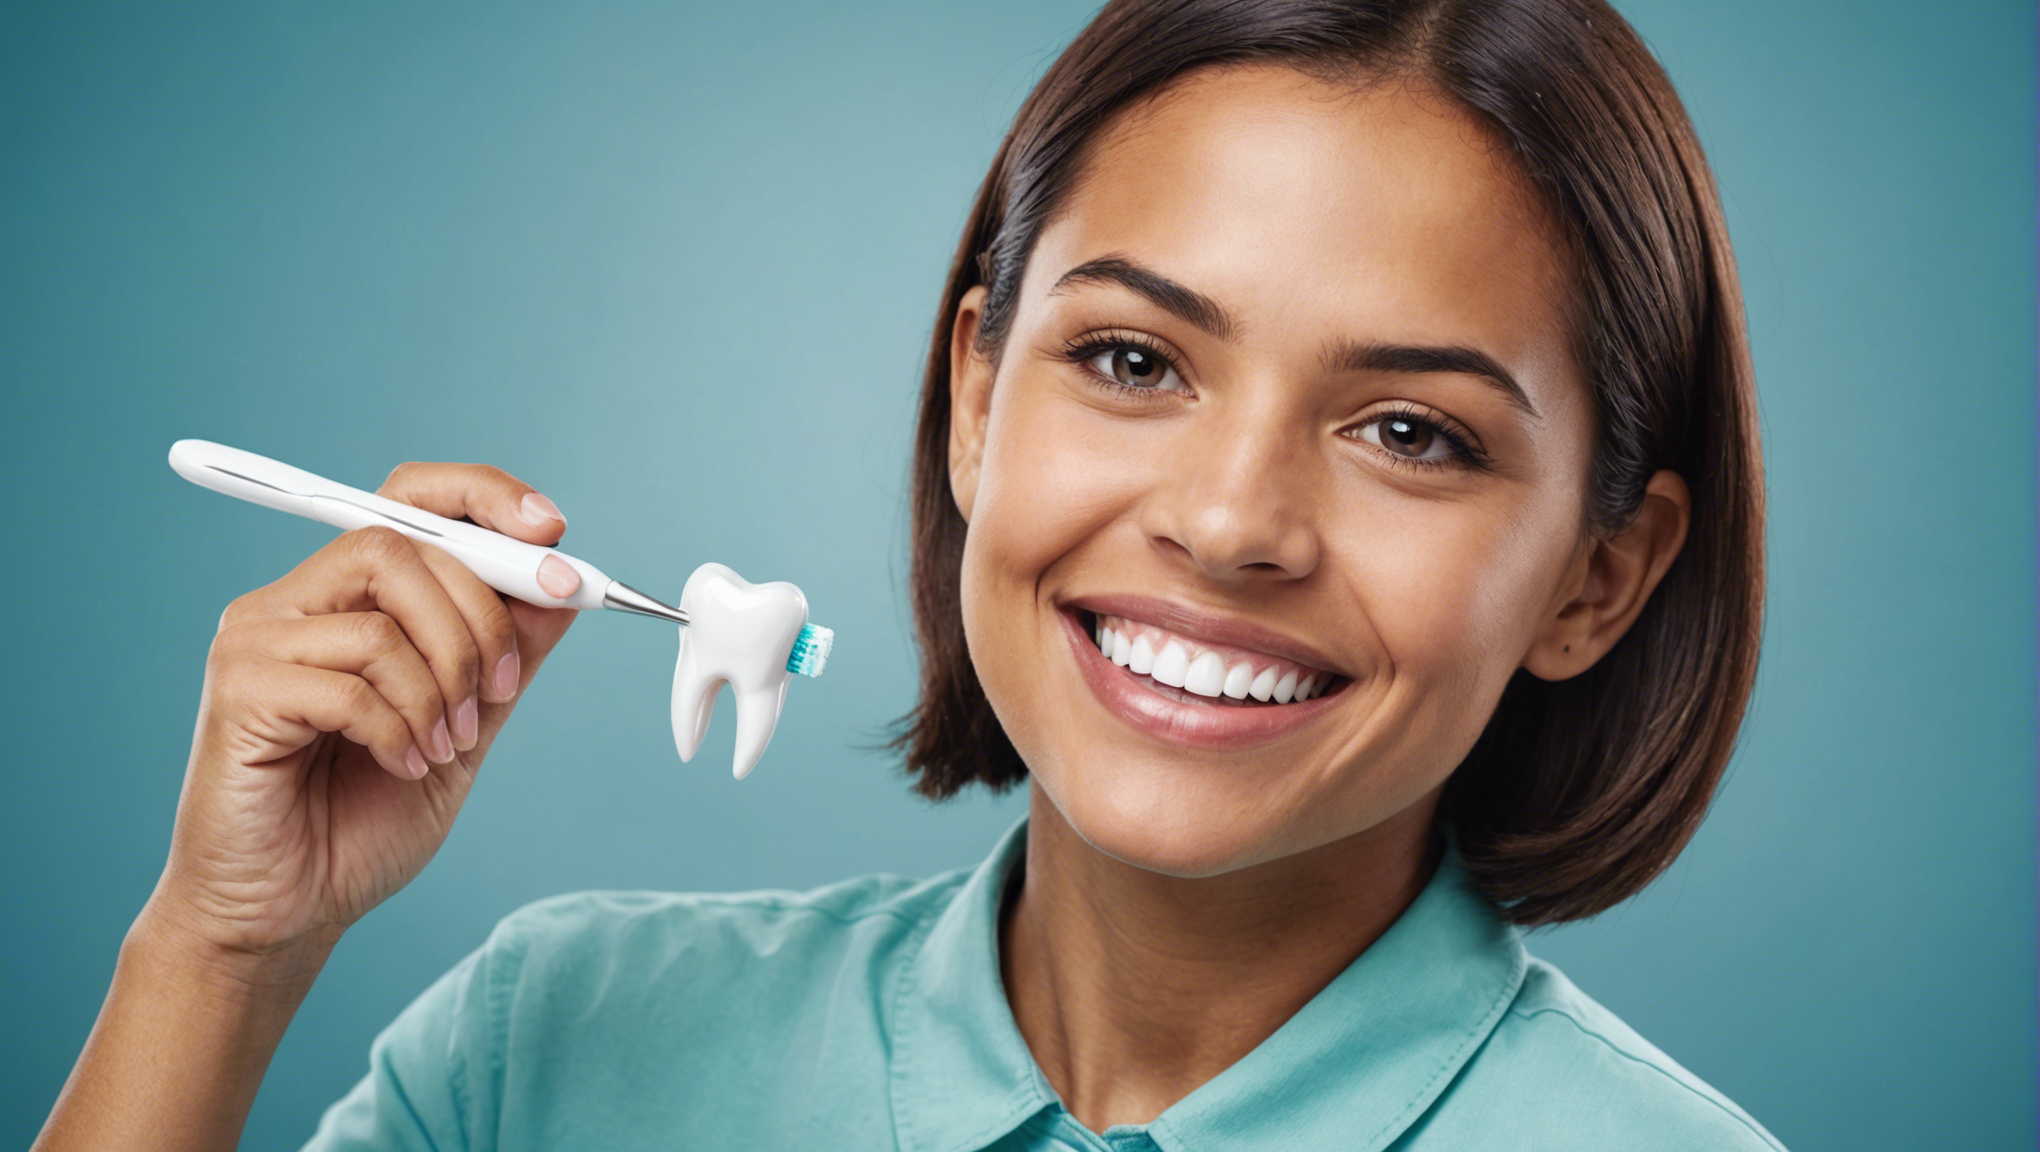 découvrez comment prendre soin de votre hygiène bucco-dentaire grâce à des affiches de prévention et protégez votre santé dentaire.